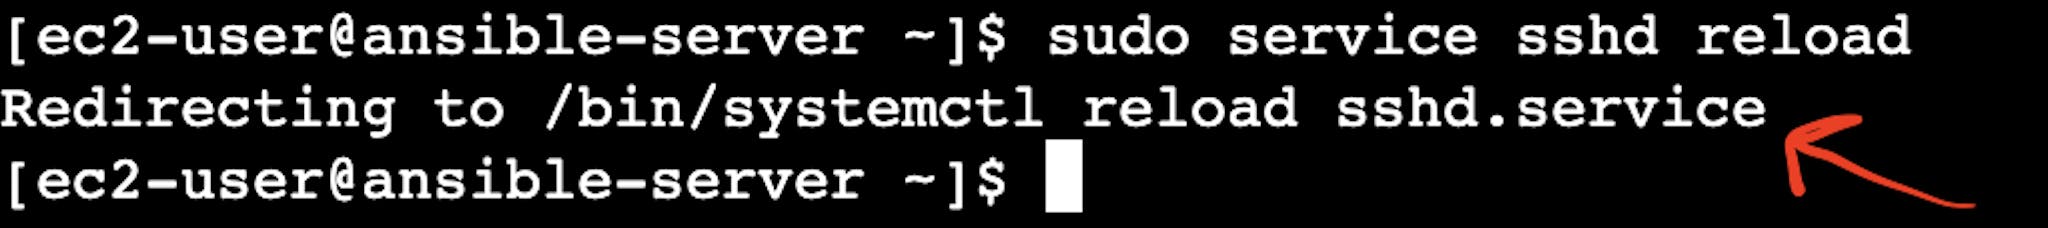 La captura de pantalla del terminal de instancia del servidor virtual AWS EC2 con el puntero al resultado de recarga sshd